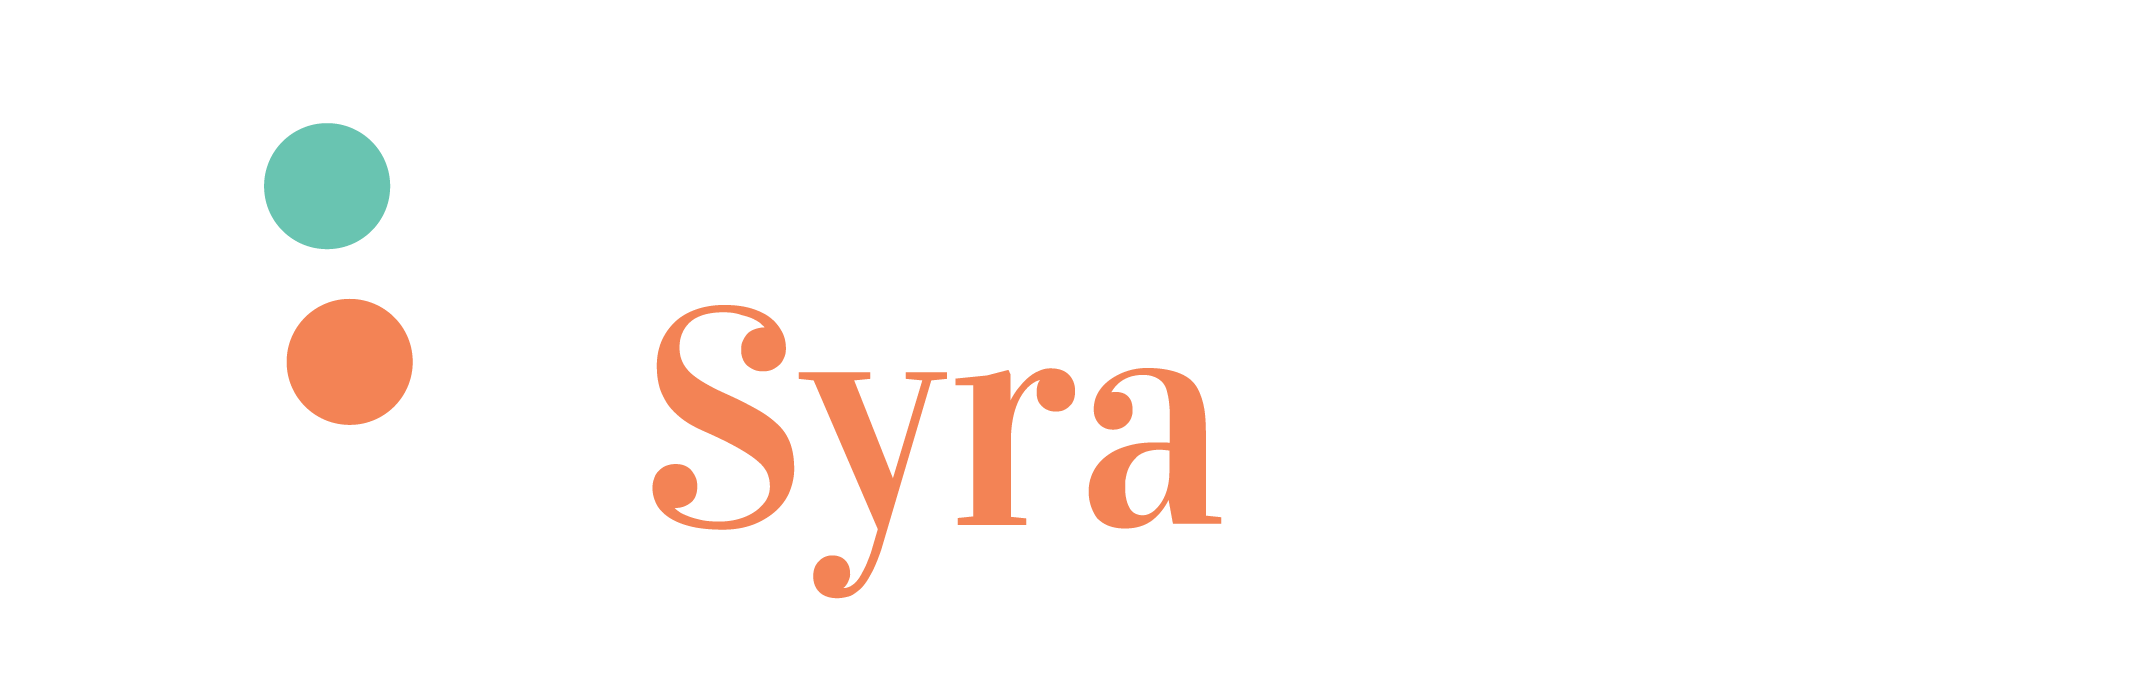 Syra Health care brand logo